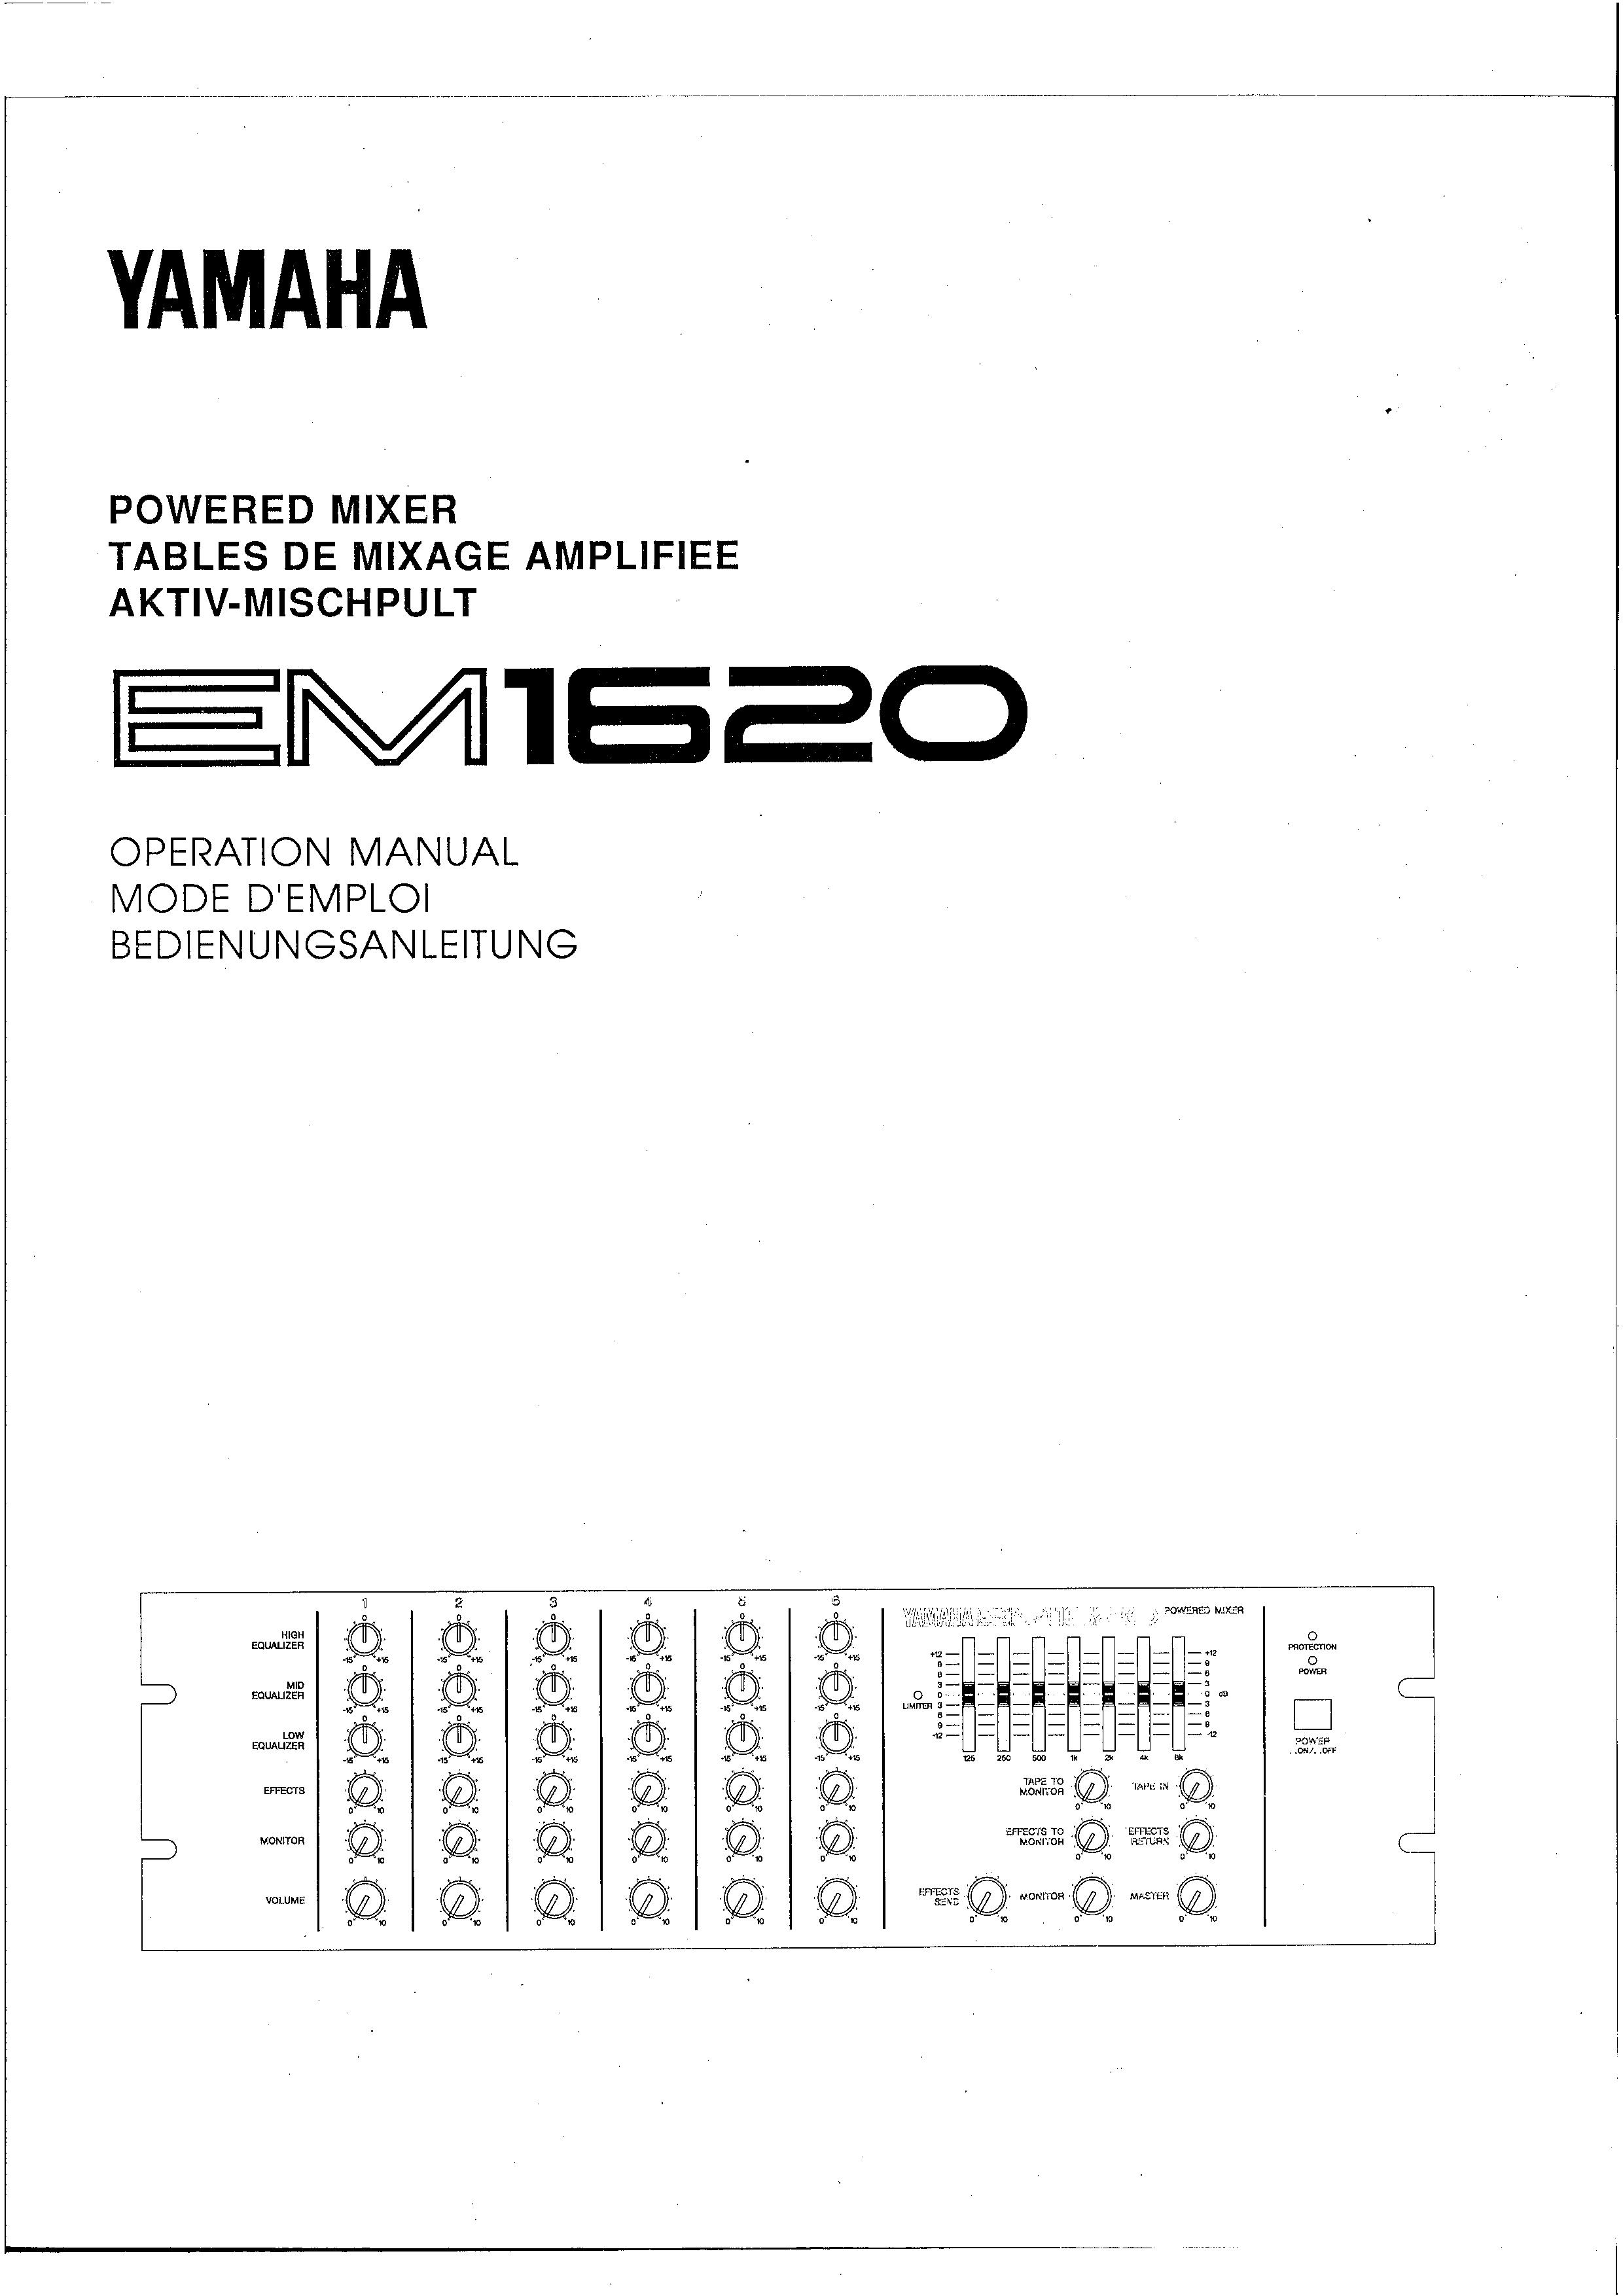 Yamaha EM1620 Music Mixer User Manual